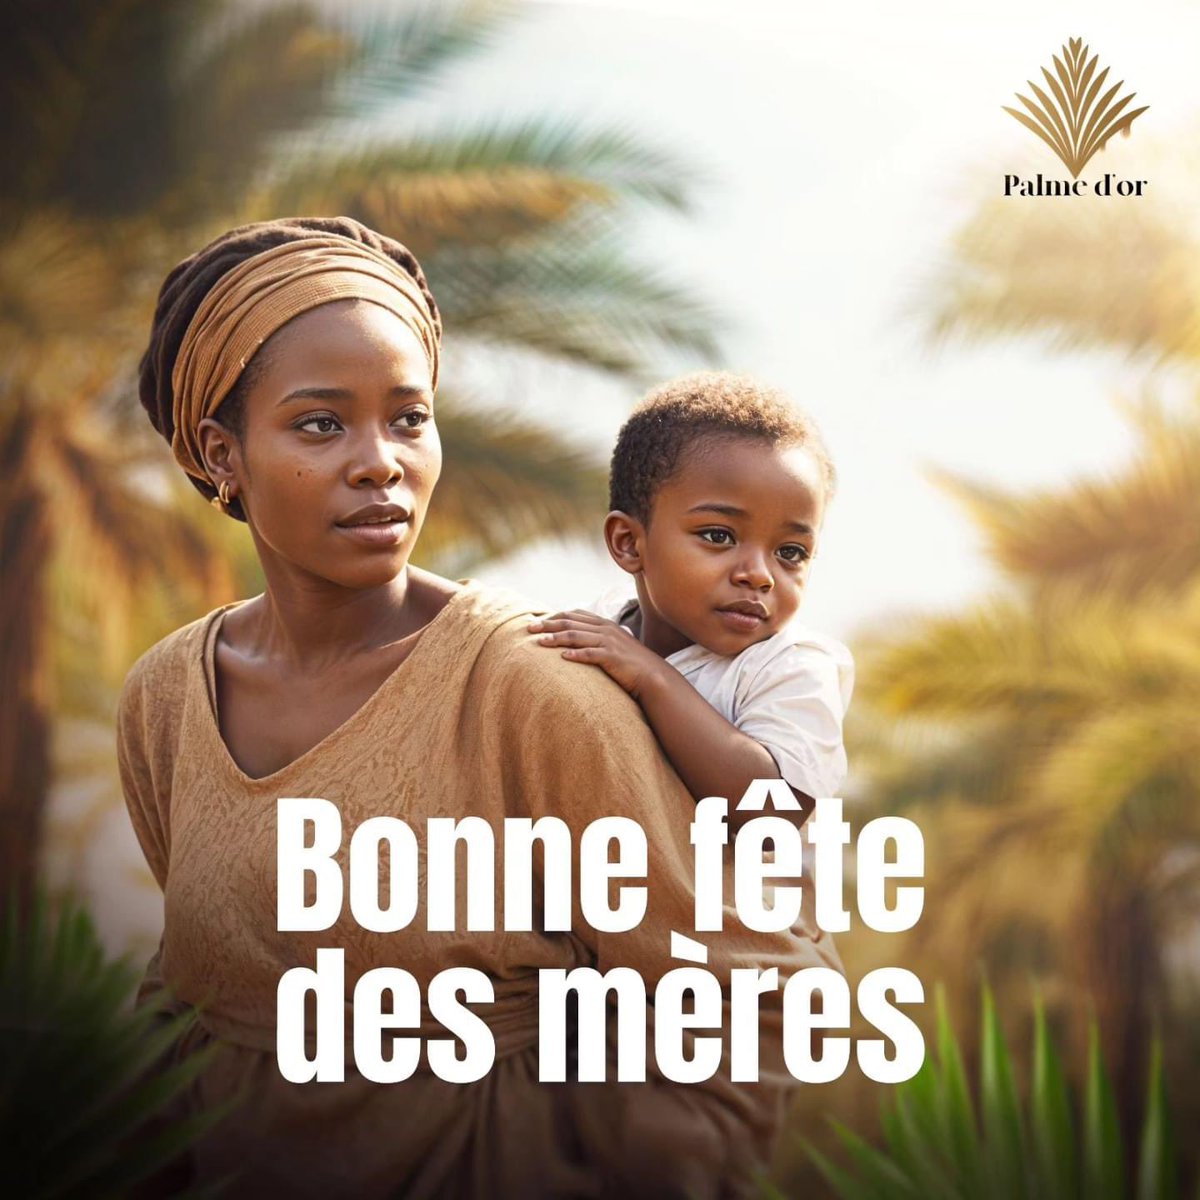 Rien n'est plus pur qu'un amour maternel.
Bonne fête des mères 🤍

#PalmeDor #palmoil #centrafrique